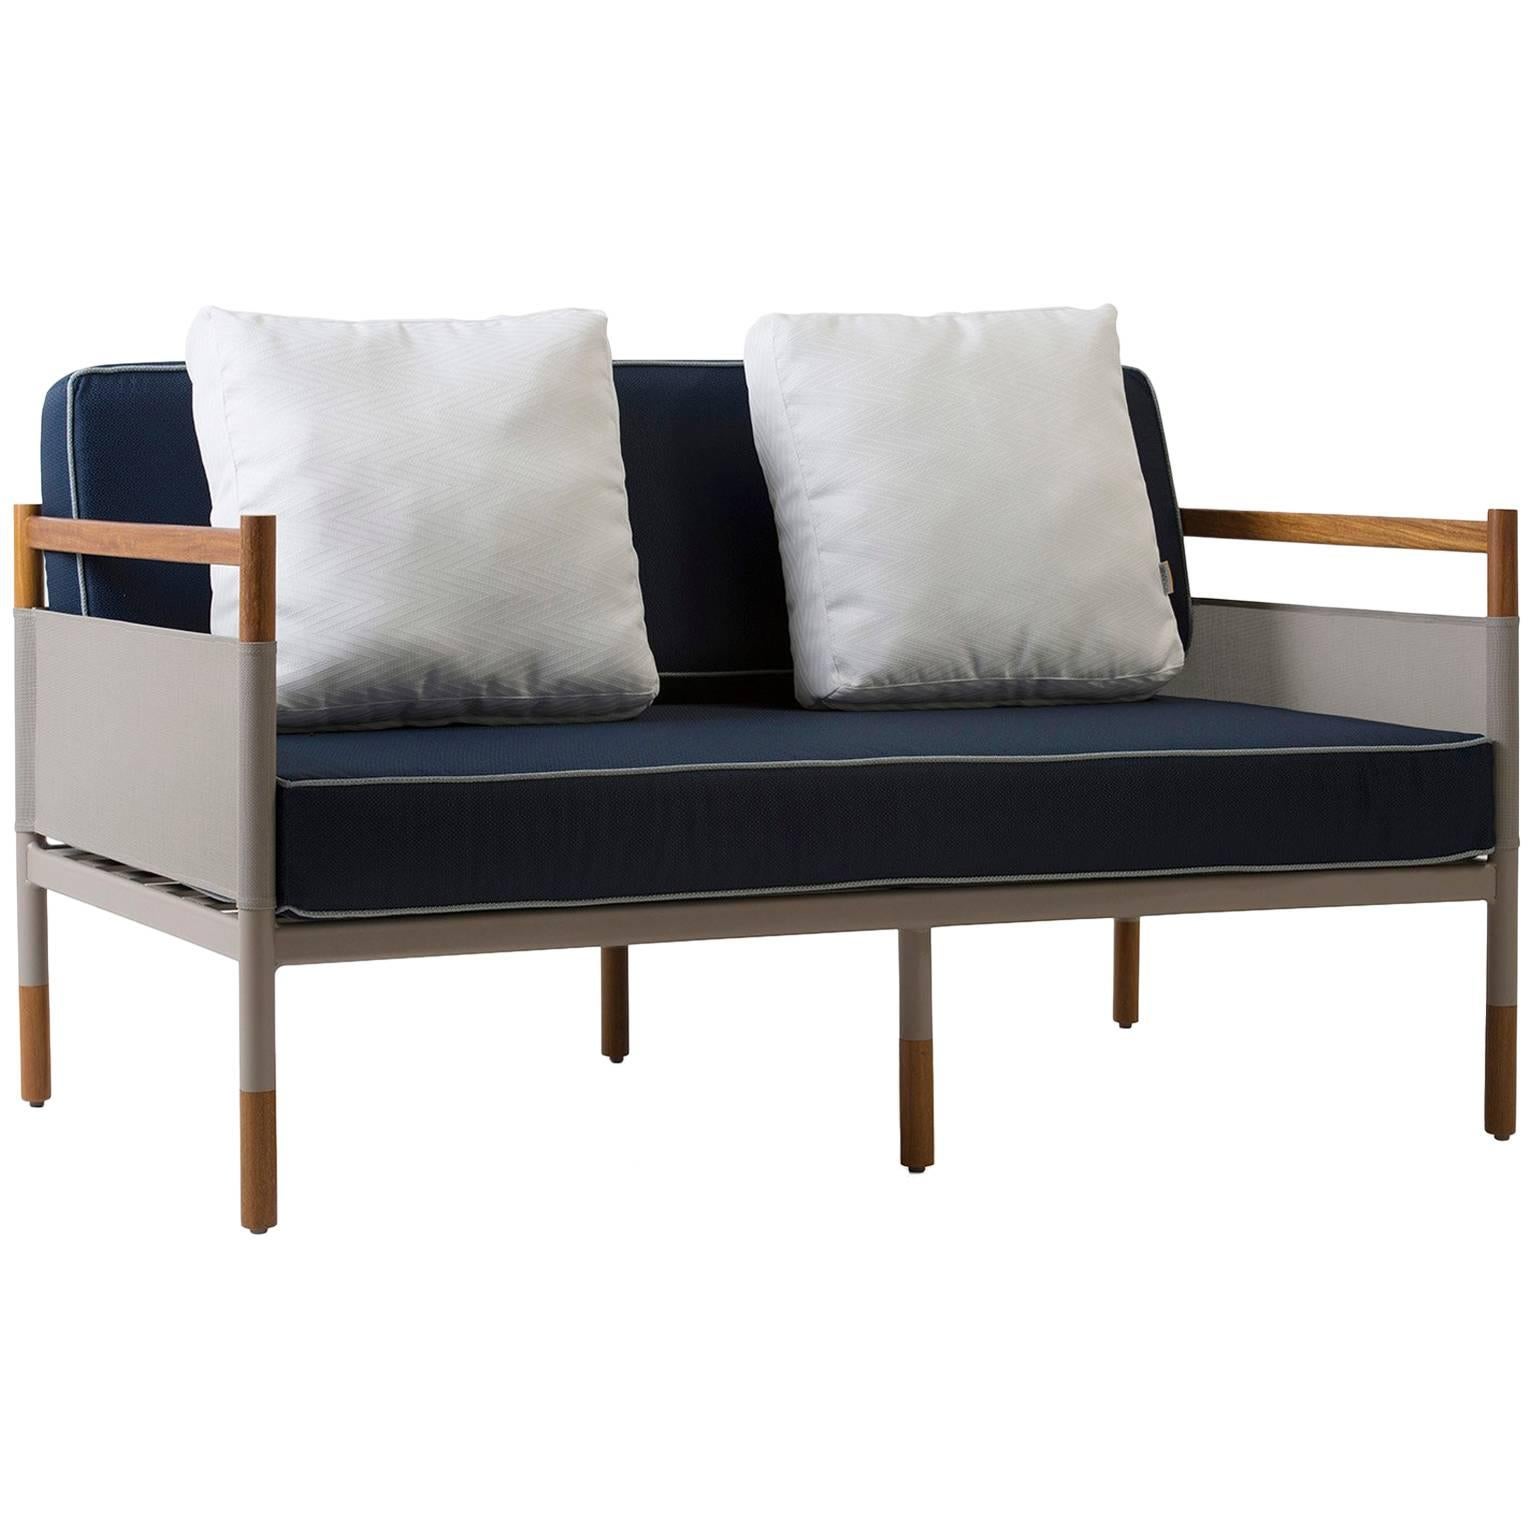 Minimalist Sofa for Outdoor, Contemporary Brazilian Design